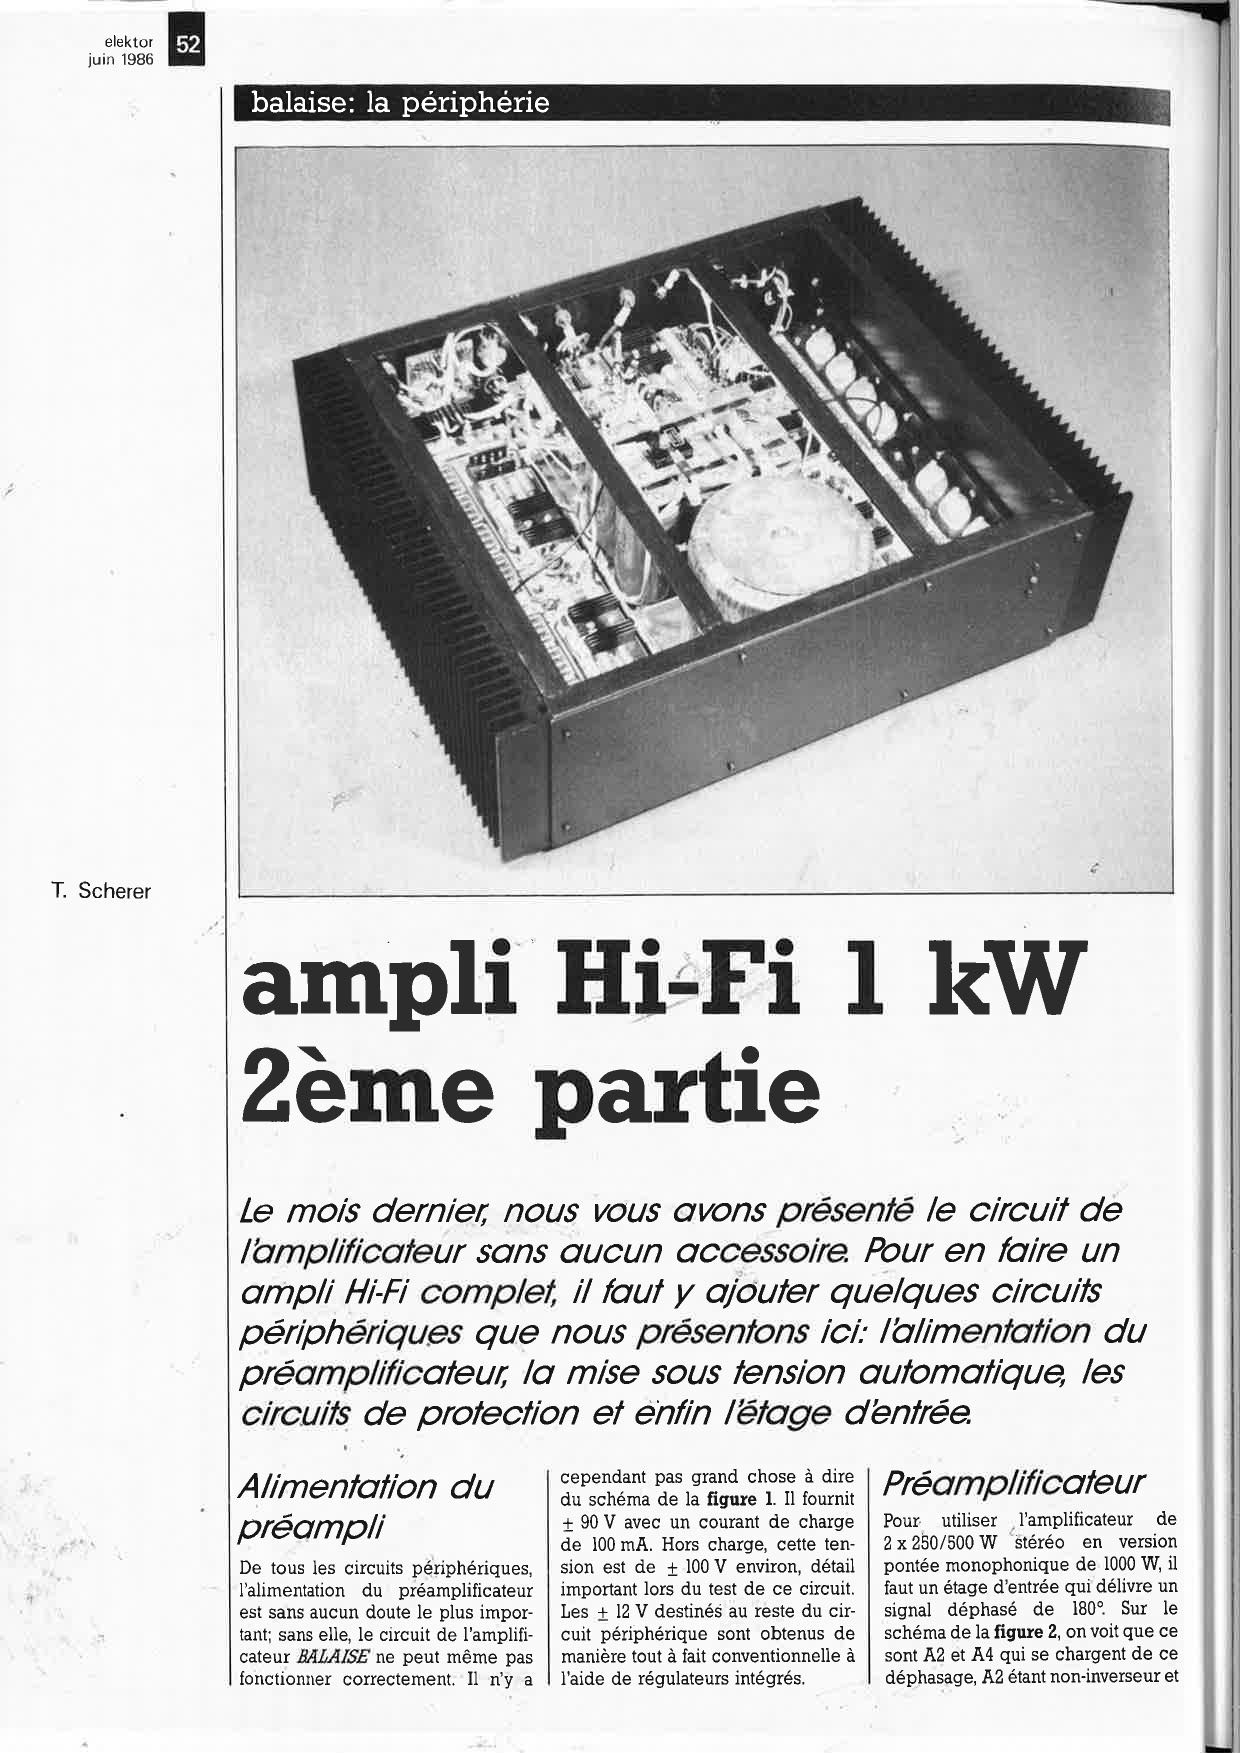 Ampli Hi-Fi 1 kW (2ème partie) (Balaise)